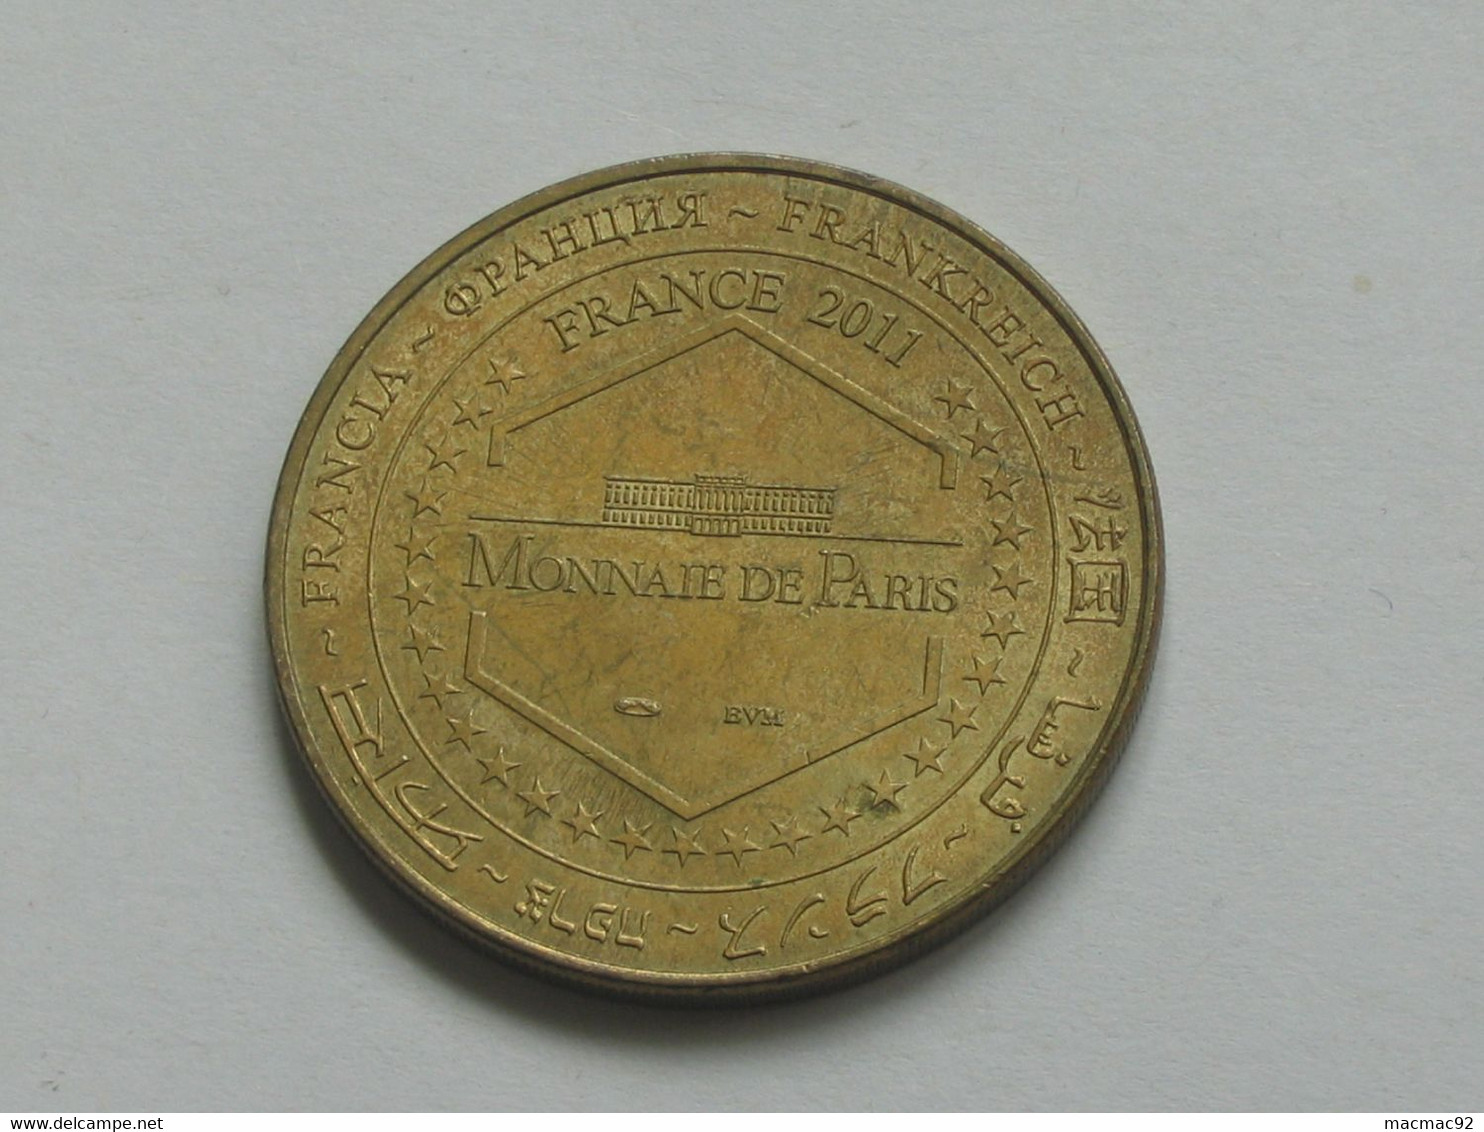 Monnaie De Paris - 1443 Hospices De Beaune 2011    **** EN ACHAT IMMEDIAT  **** - 2011